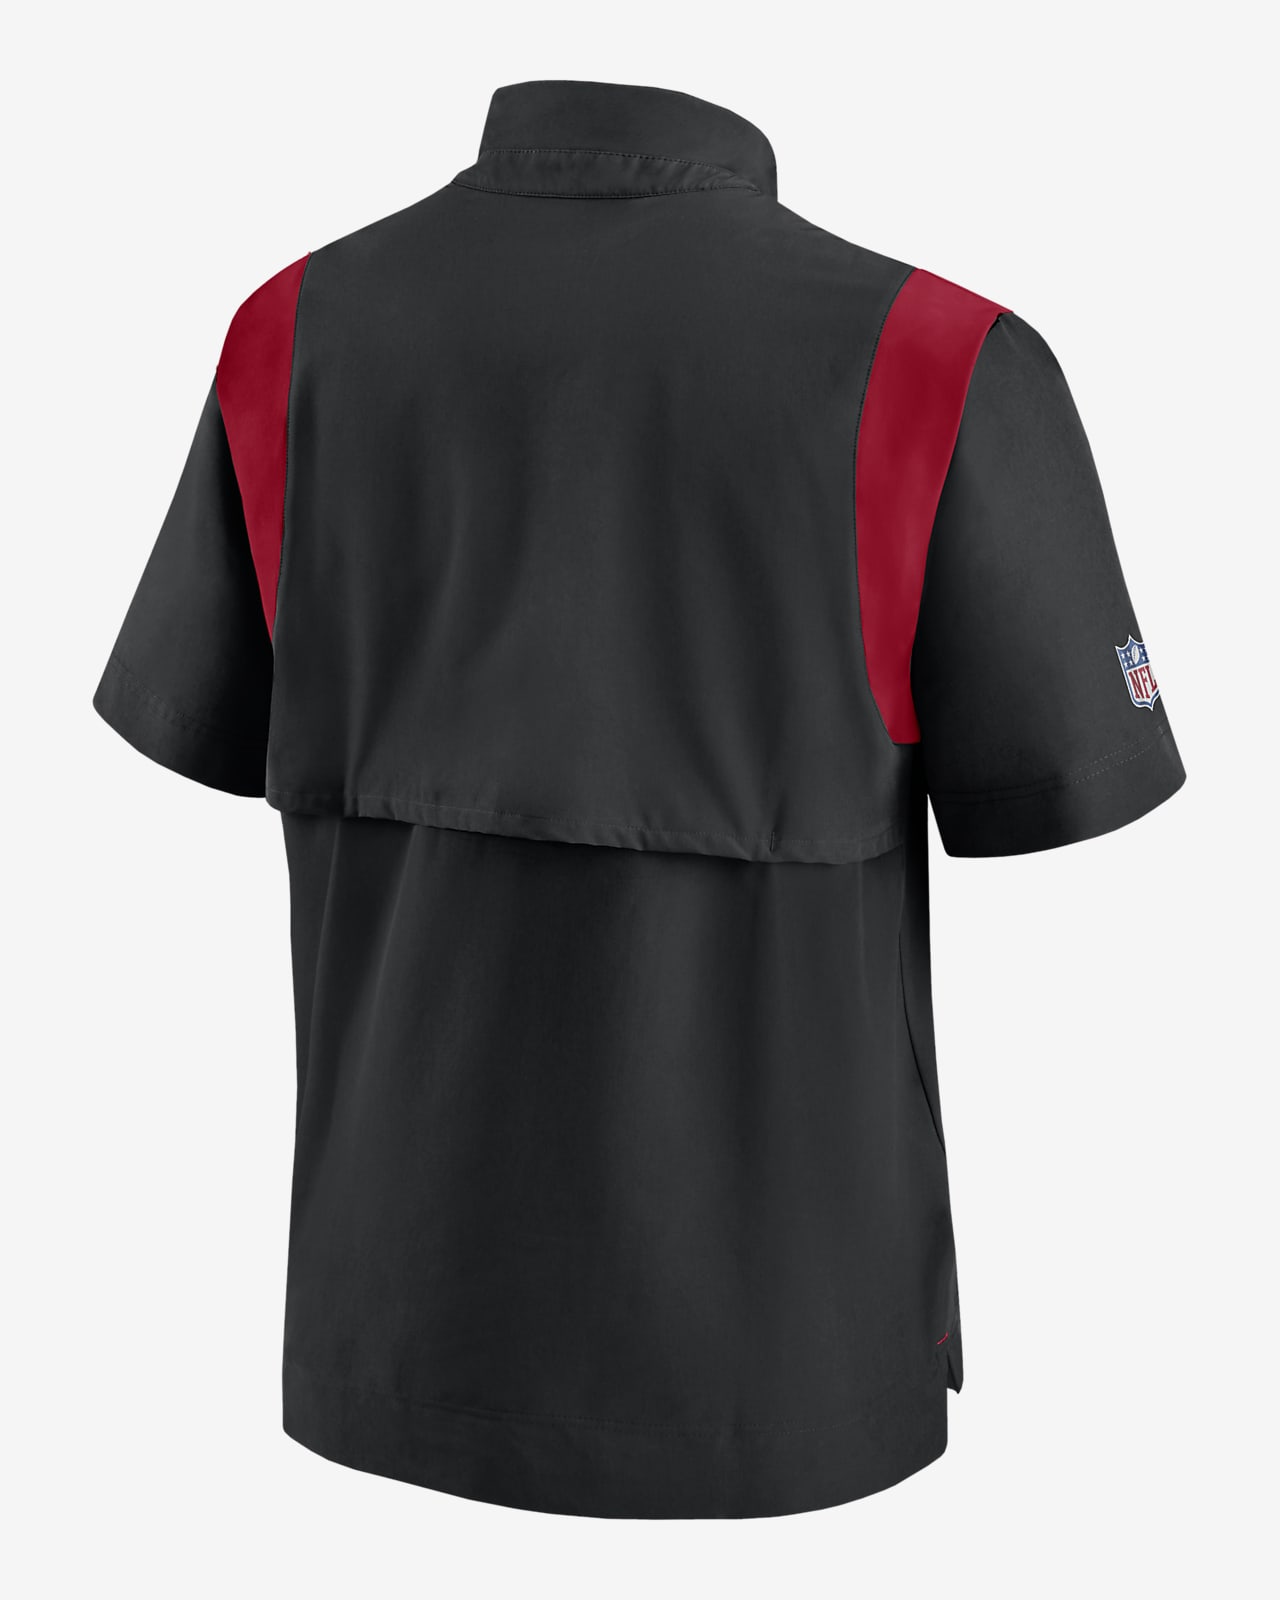 Nike Men's San Francisco 49ers Sideline Coaches Short Sleeve Jacket - Black - M (Medium)